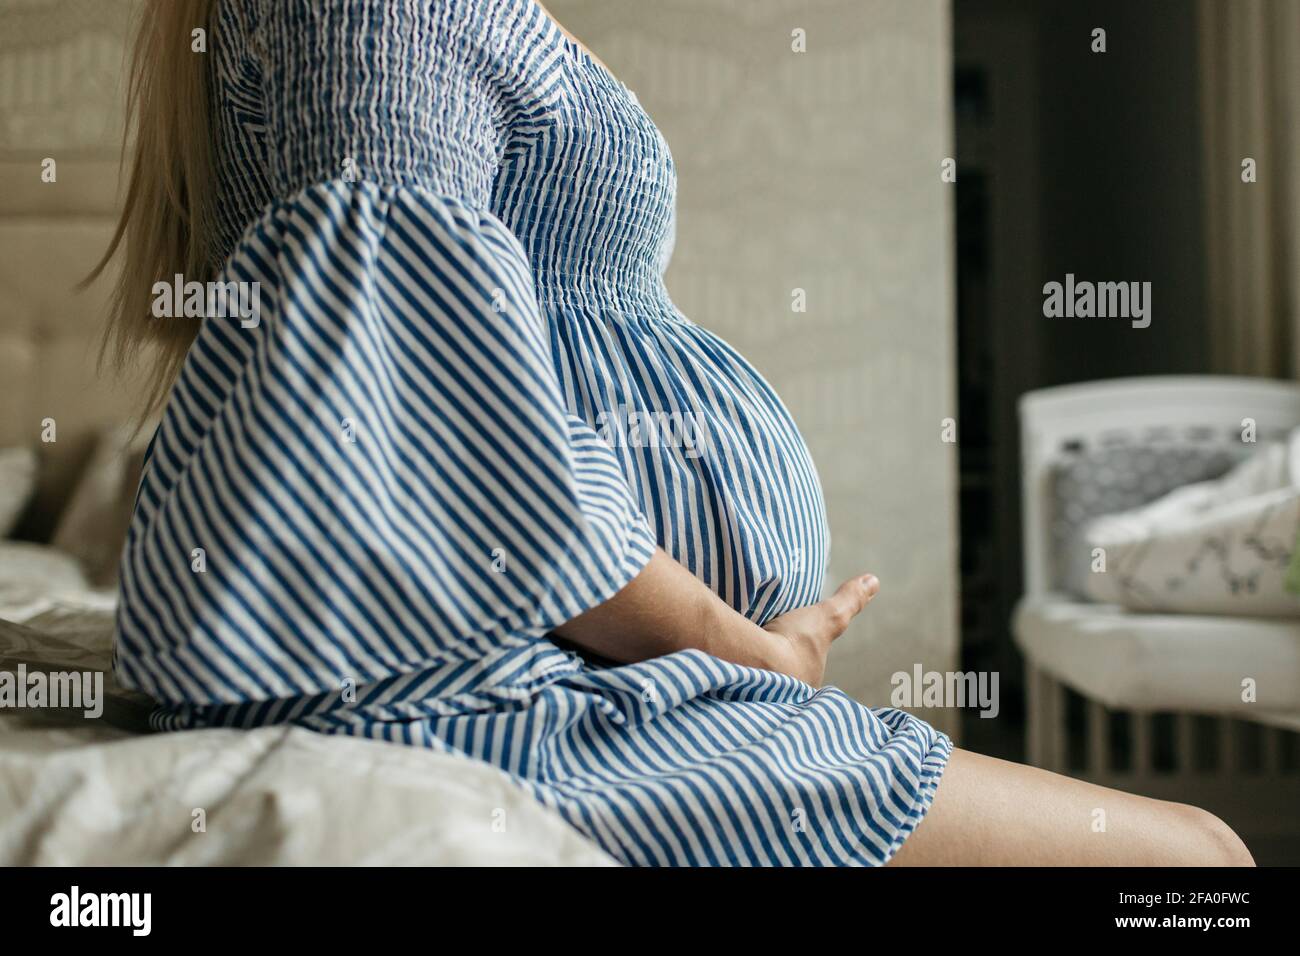 Vue latérale d'une femme enceinte touchant son ventre. Image rognée d'une mère qui tient son bosse de grossesse. Banque D'Images